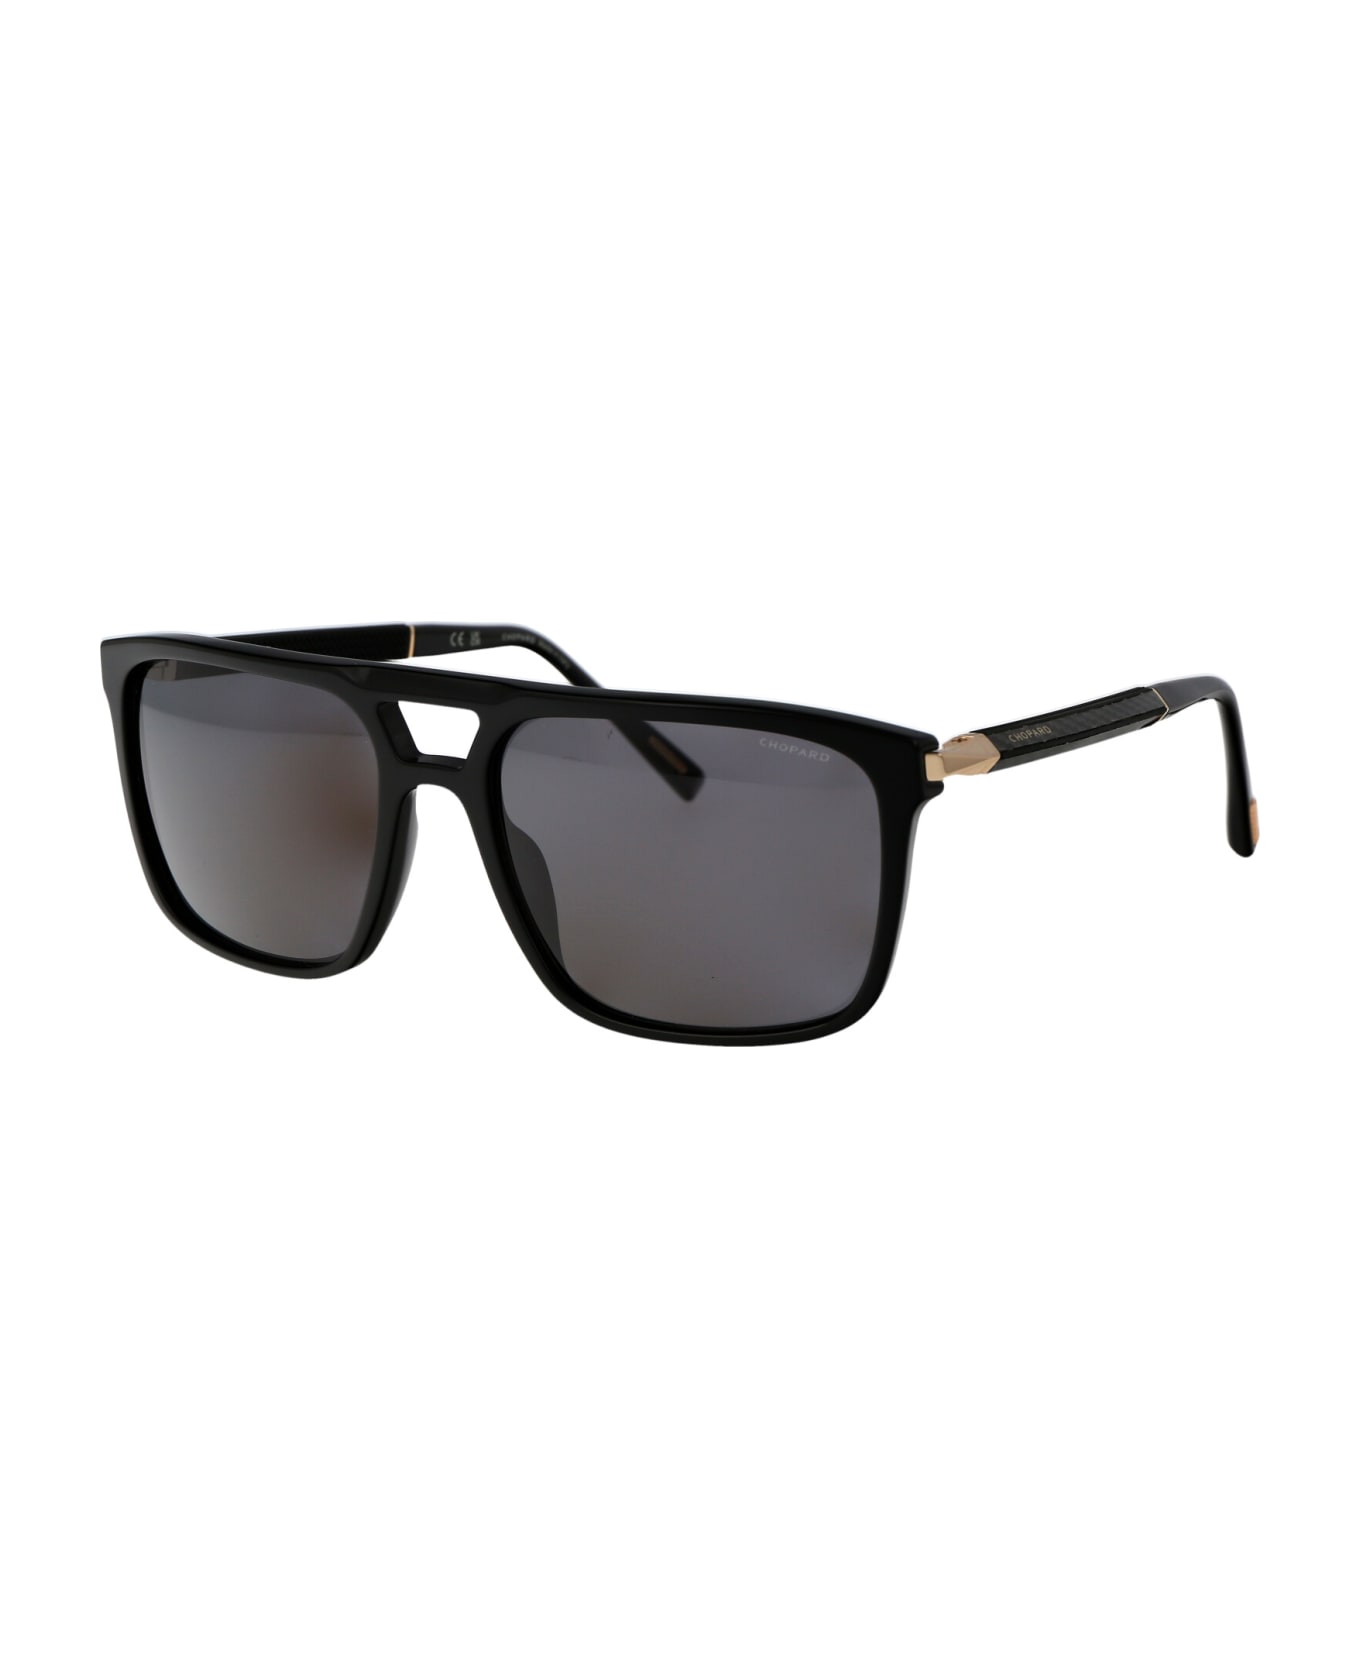 Chopard Sch311 Sunglasses - 700P BLACK